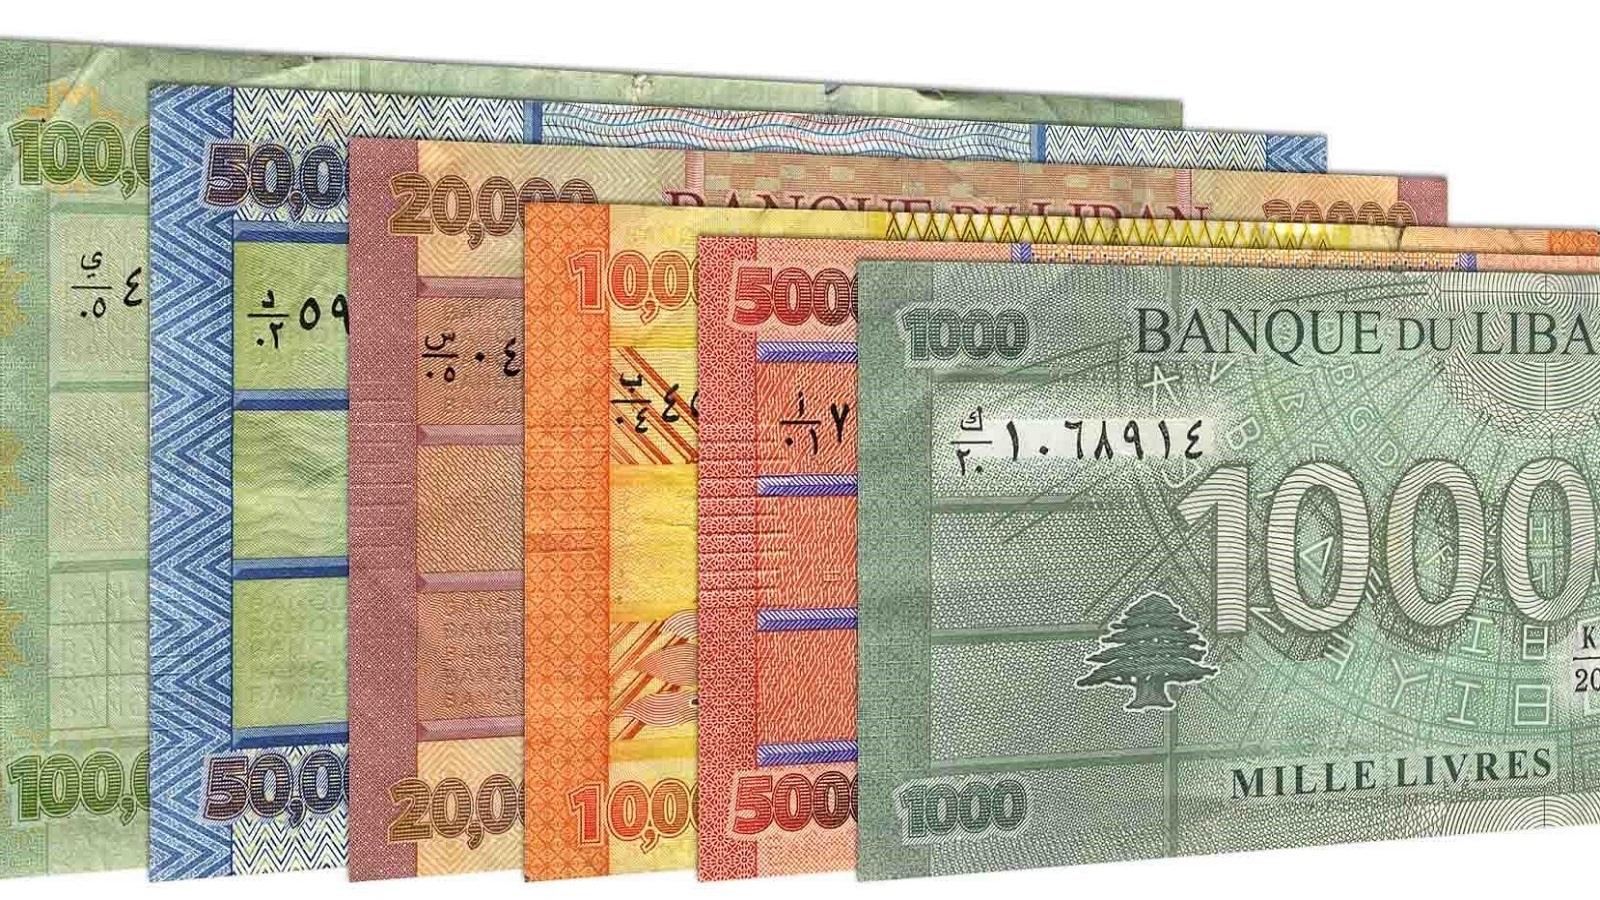 "مجلس النقد" بدل مصرف لبنان: وهمٌ وعودةٌ إلى الاستعمار